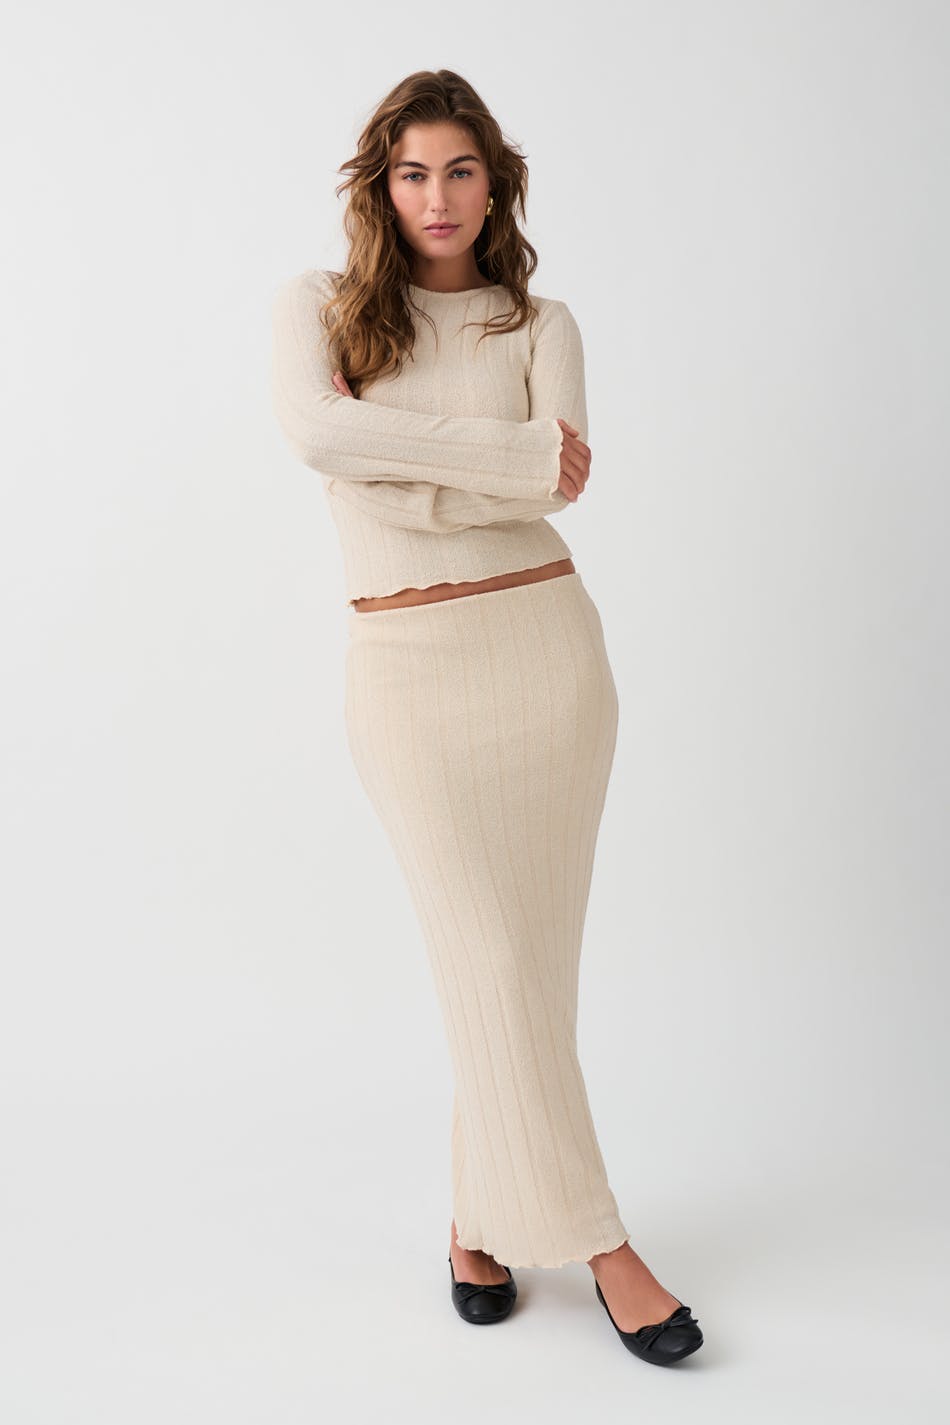 Gina Tricot - Rib skirt - stickade kjolar - Beige - M - Female